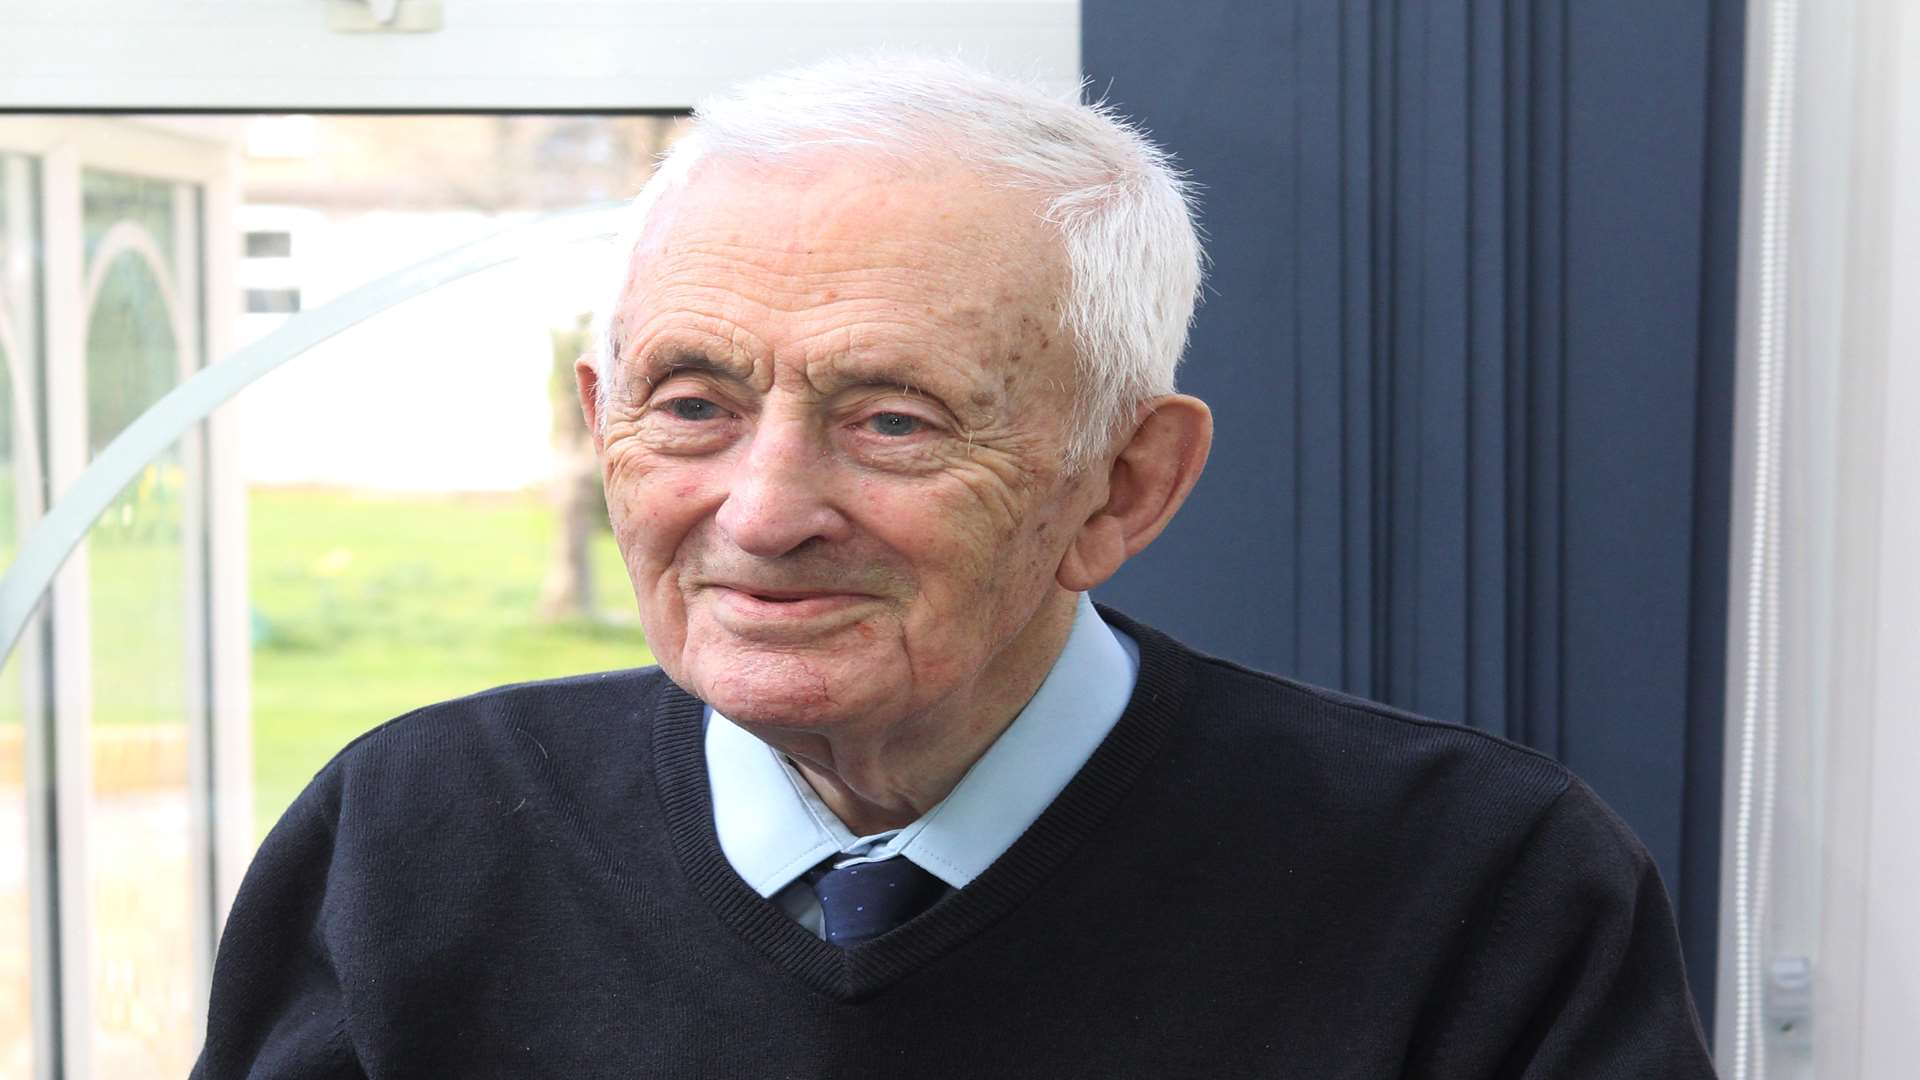 George Huggins celebrated is 104th birthday this week